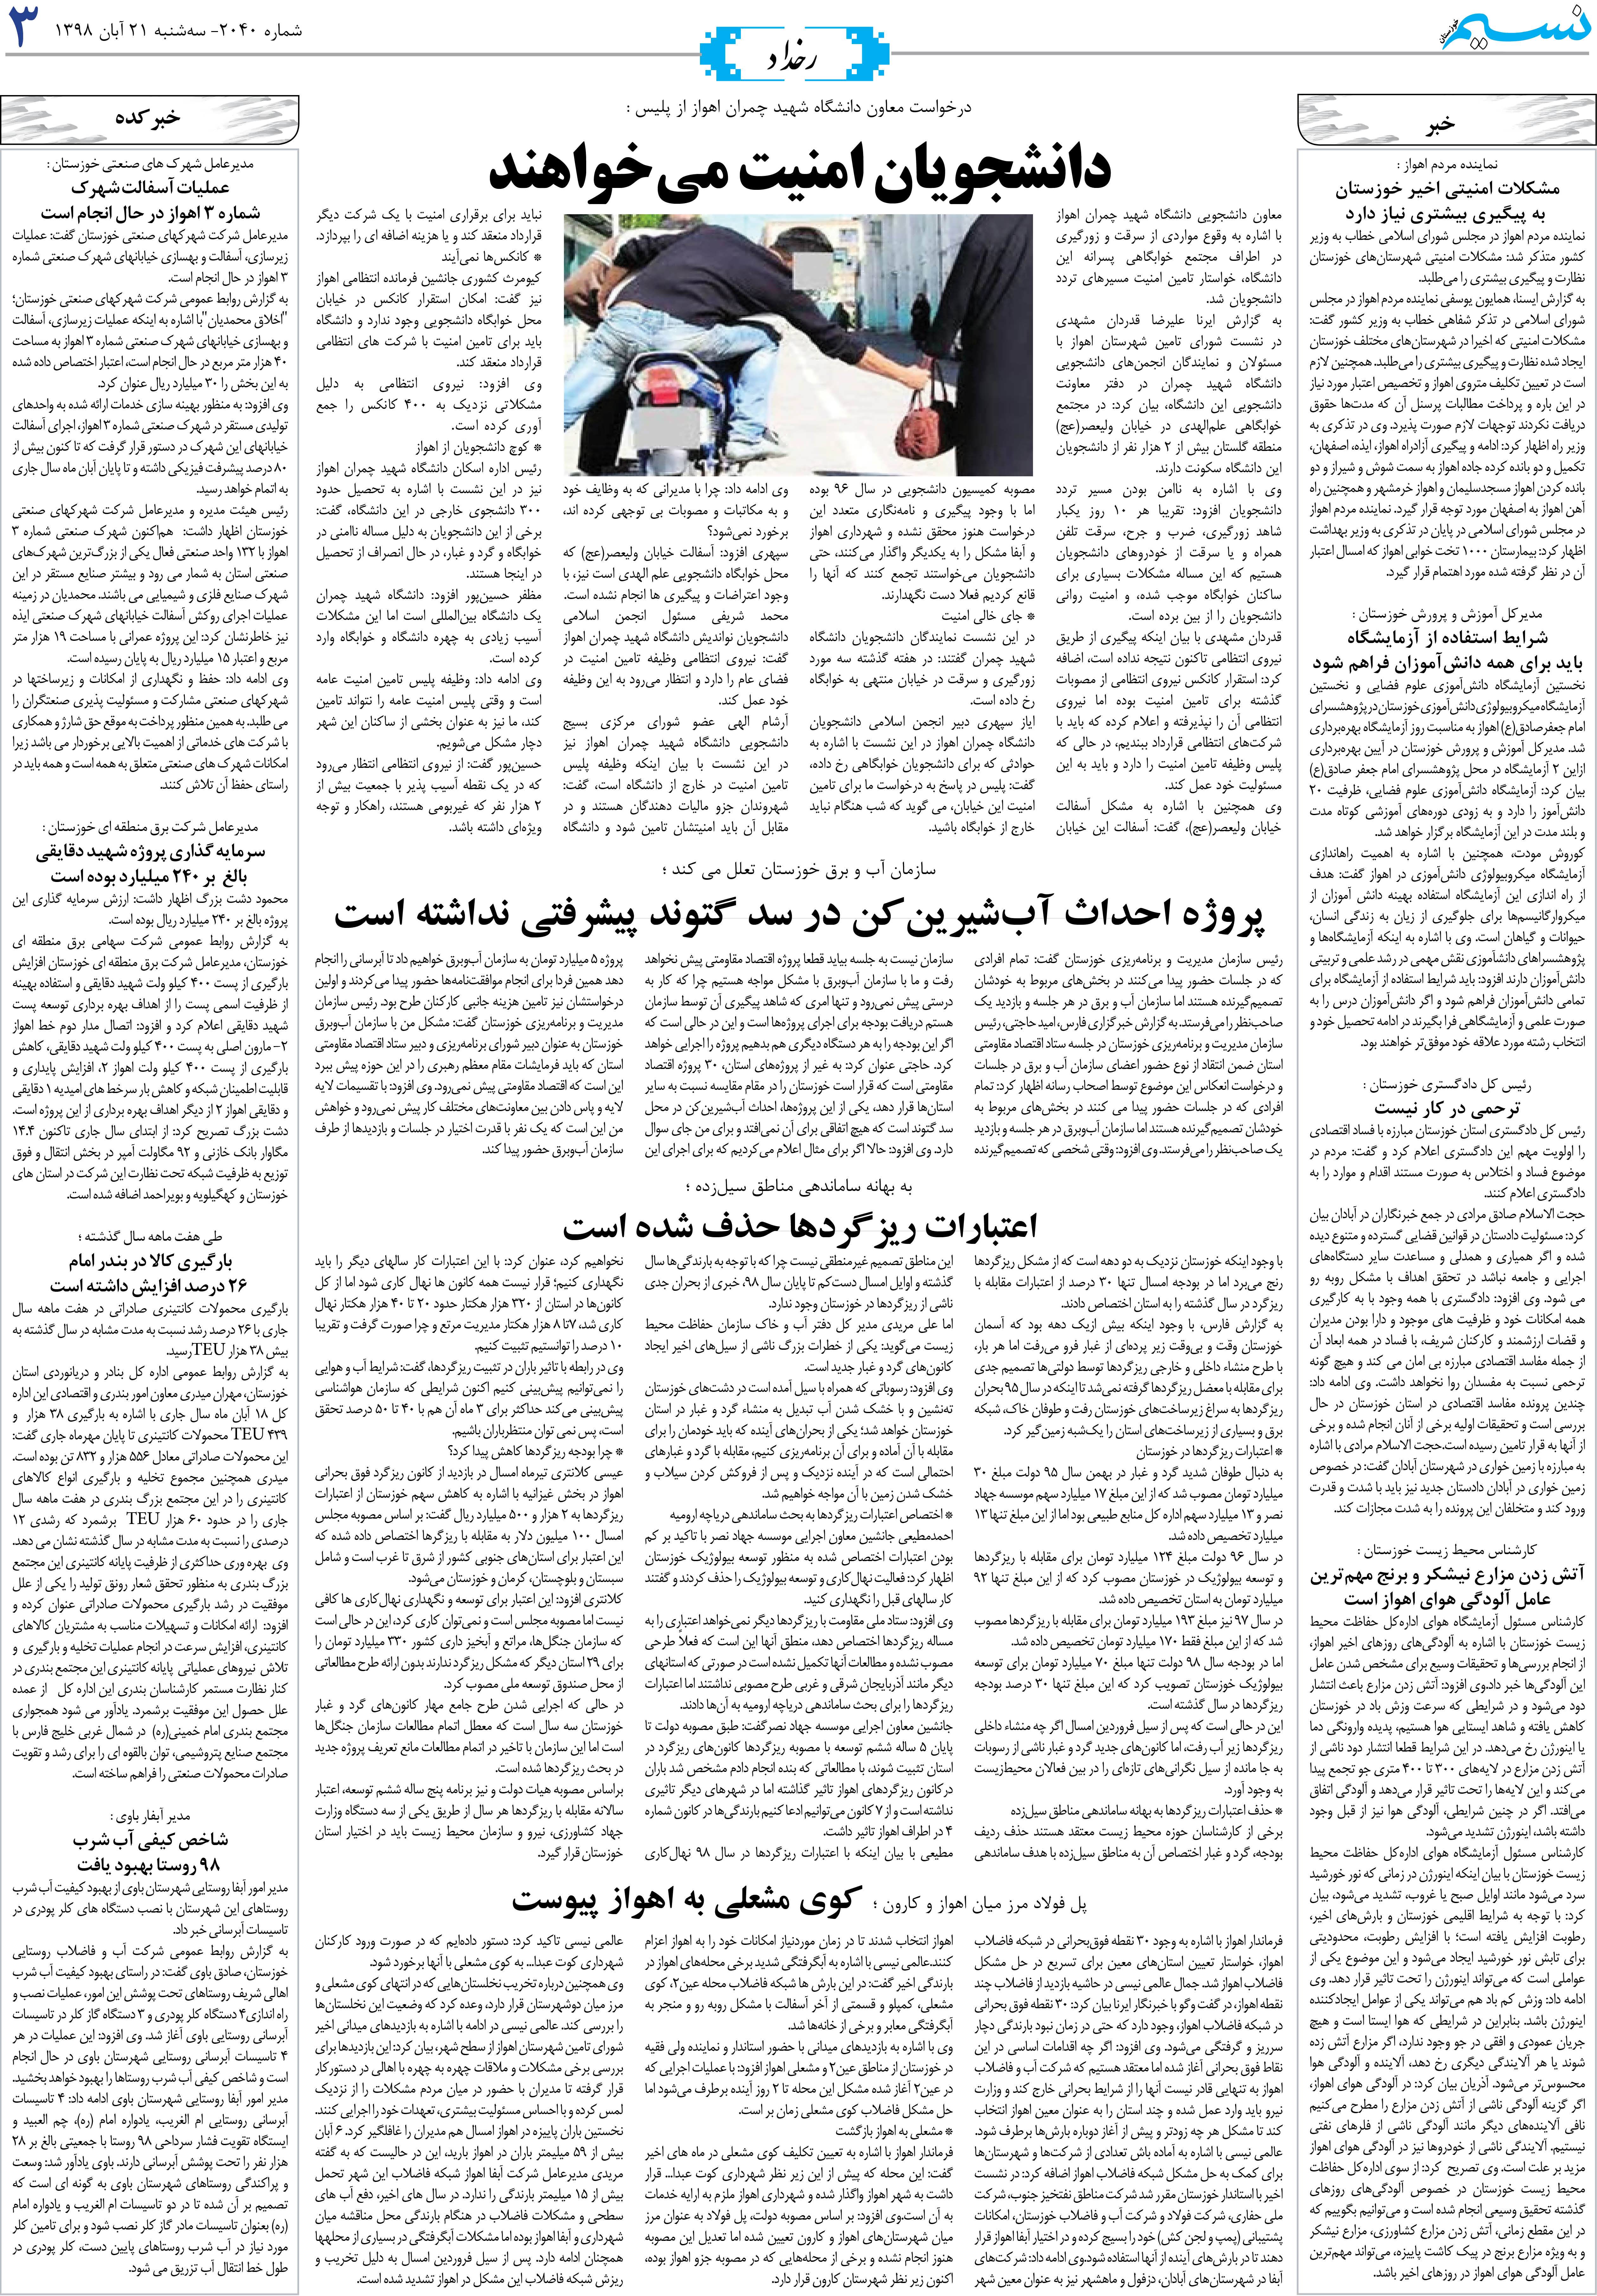 صفحه رخداد روزنامه نسیم شماره 2040